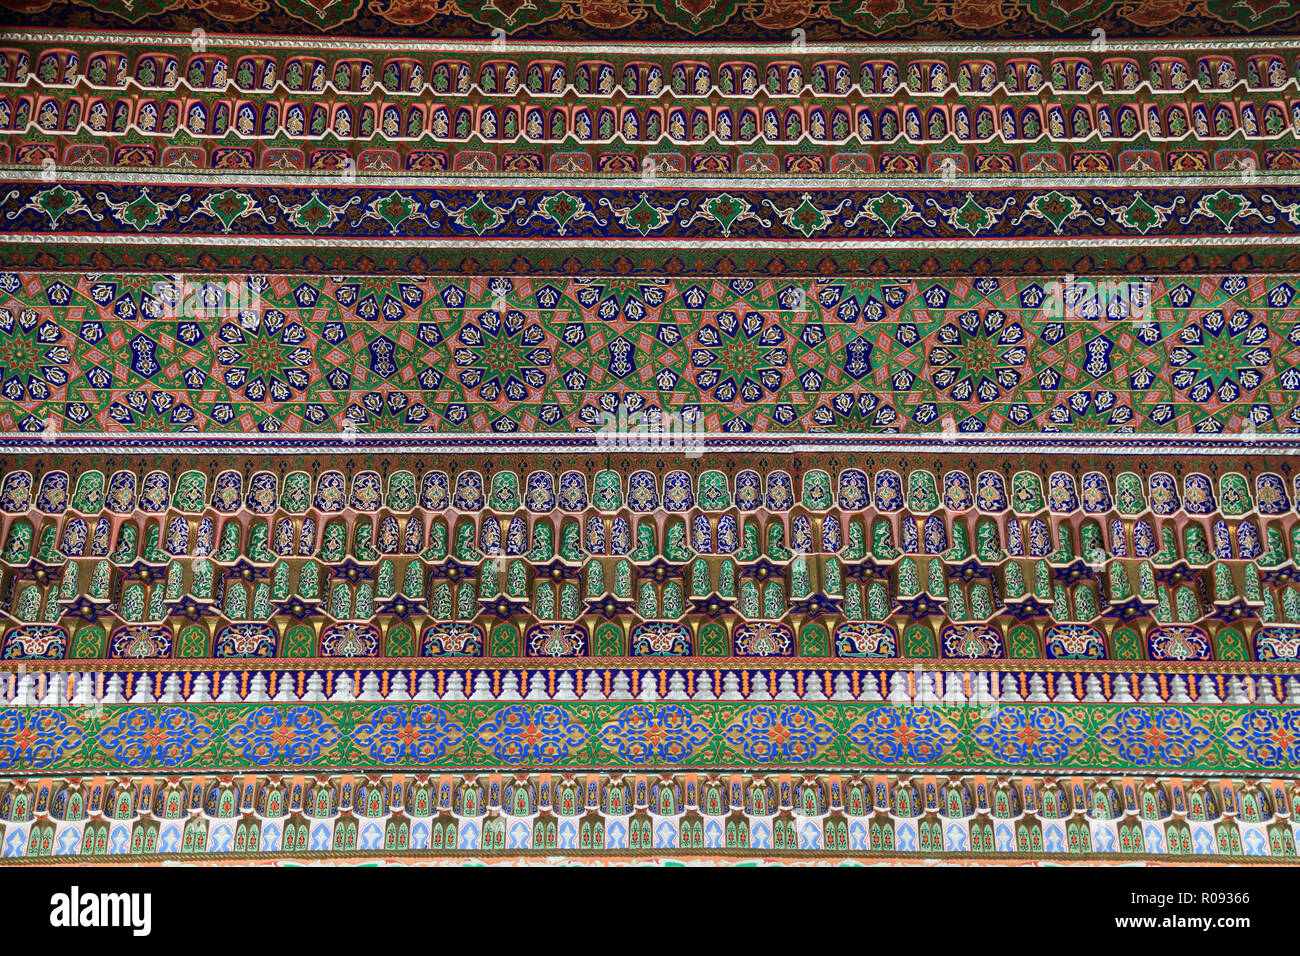 Uzbekistan; Tashkent, Museum of Applied Arts, Stock Photo